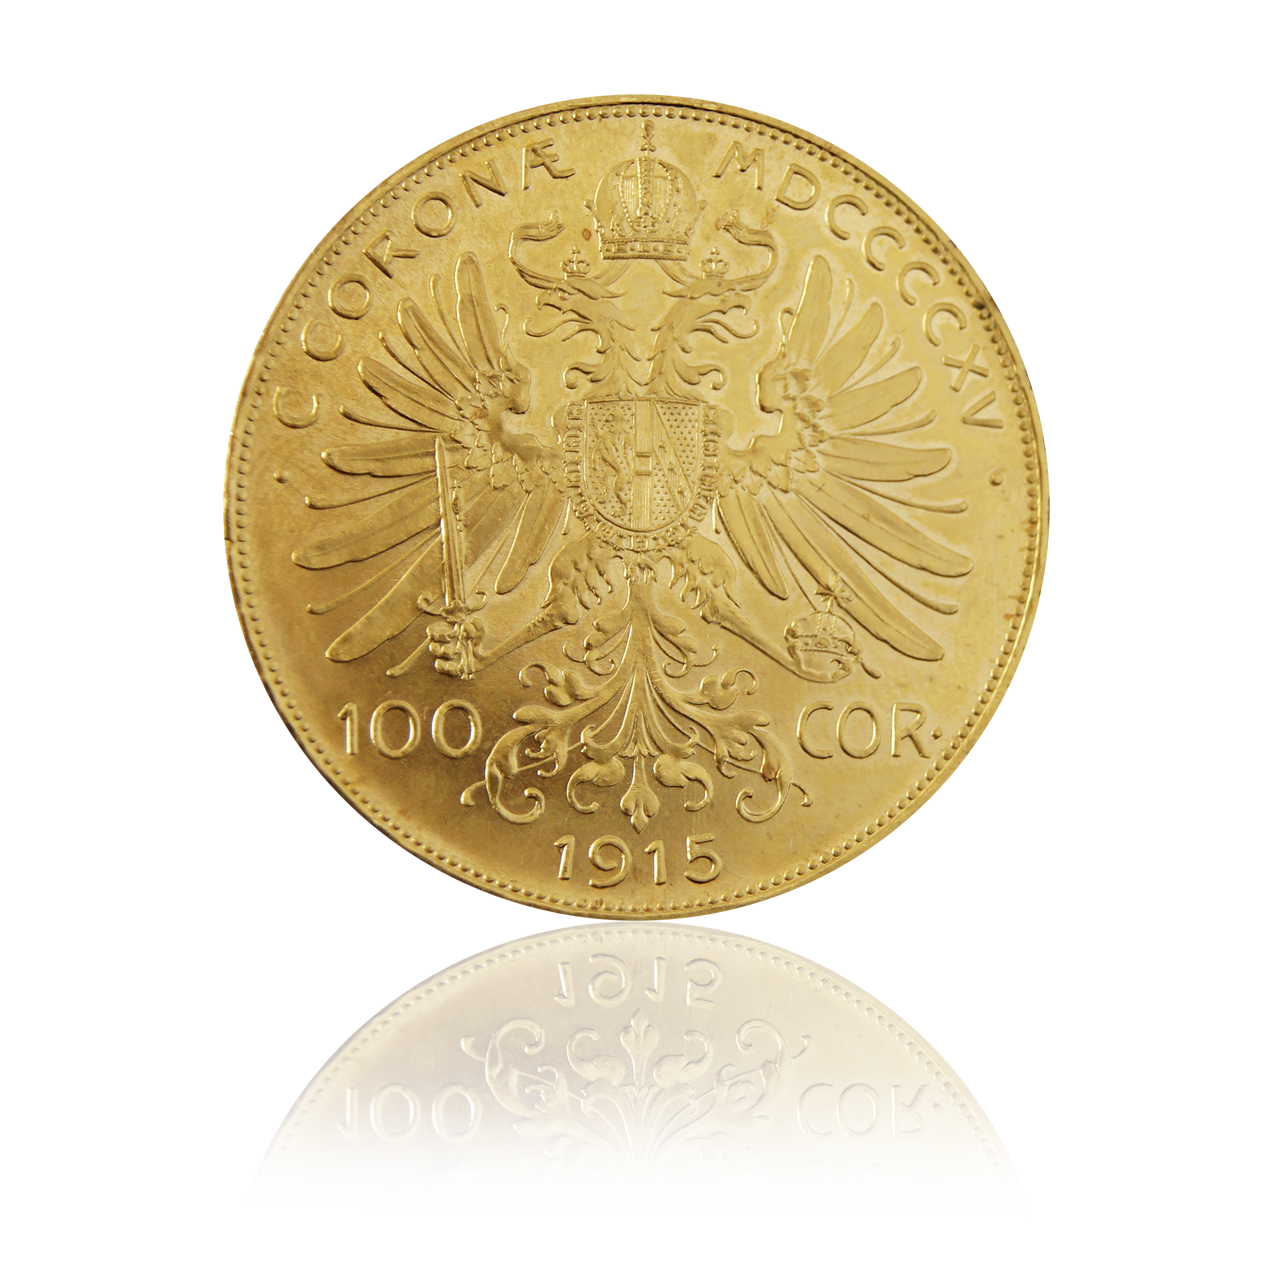 100 Kronen - Austria gold coin